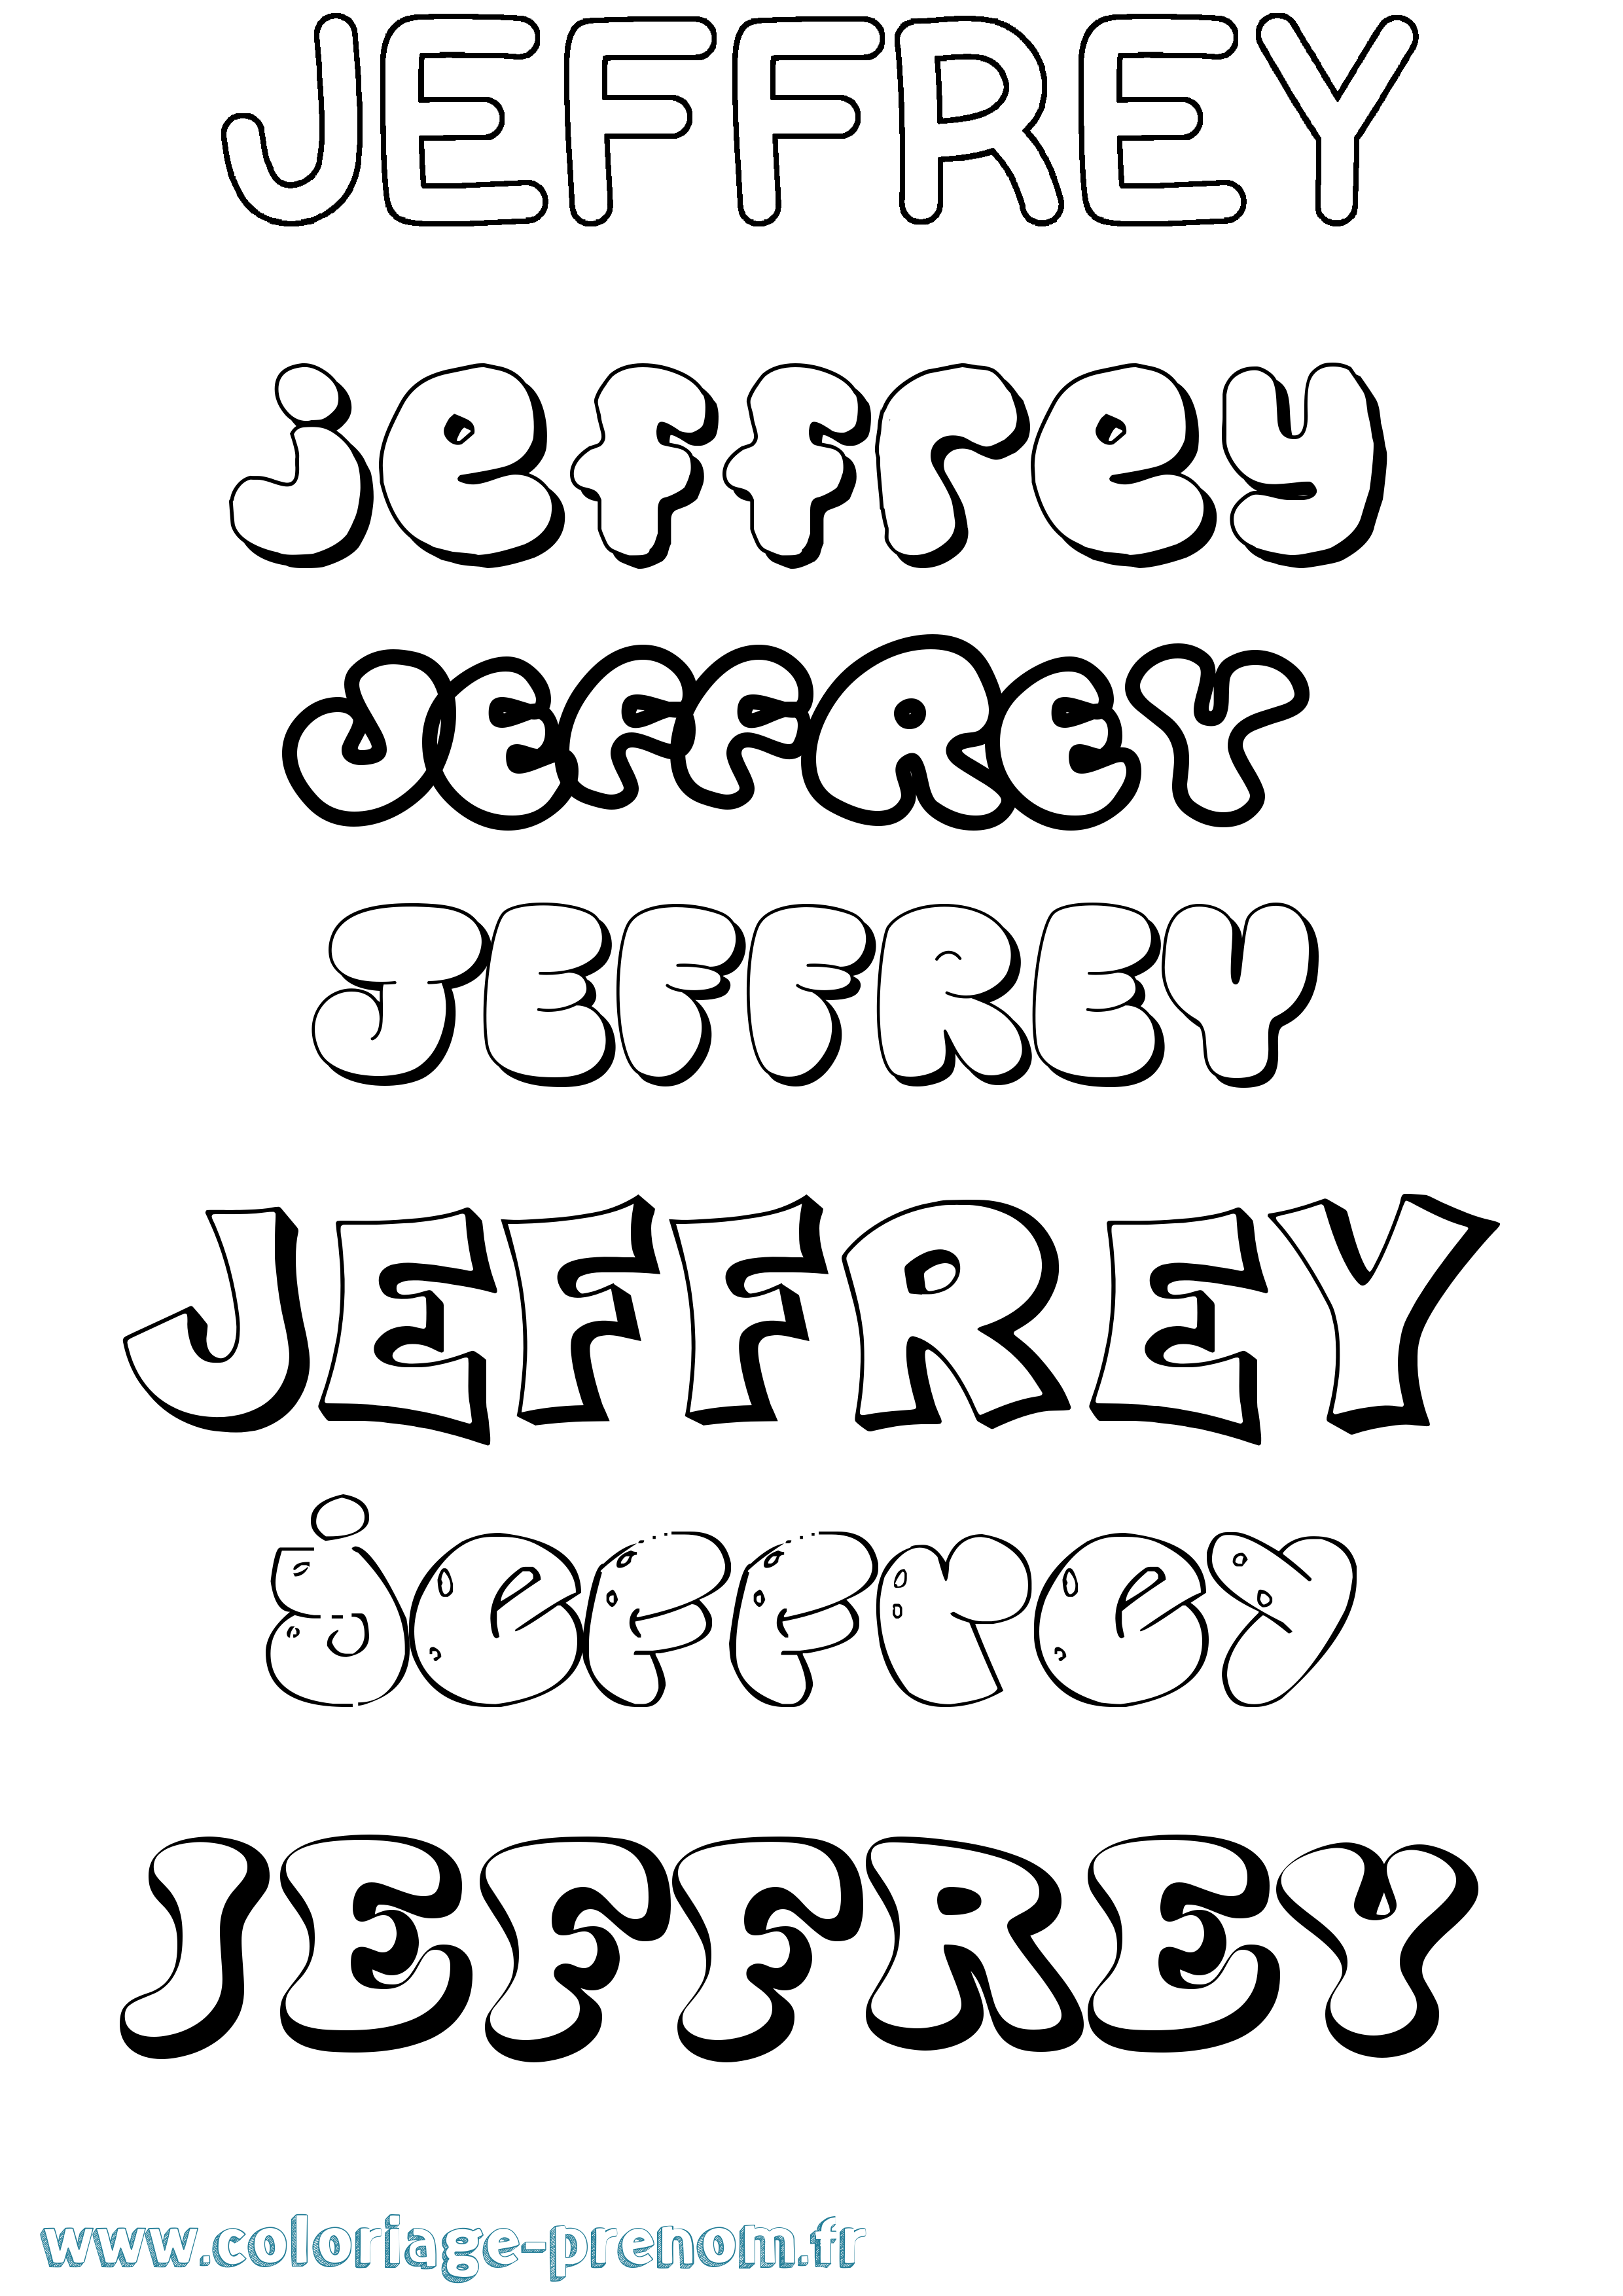 Coloriage prénom Jeffrey Bubble